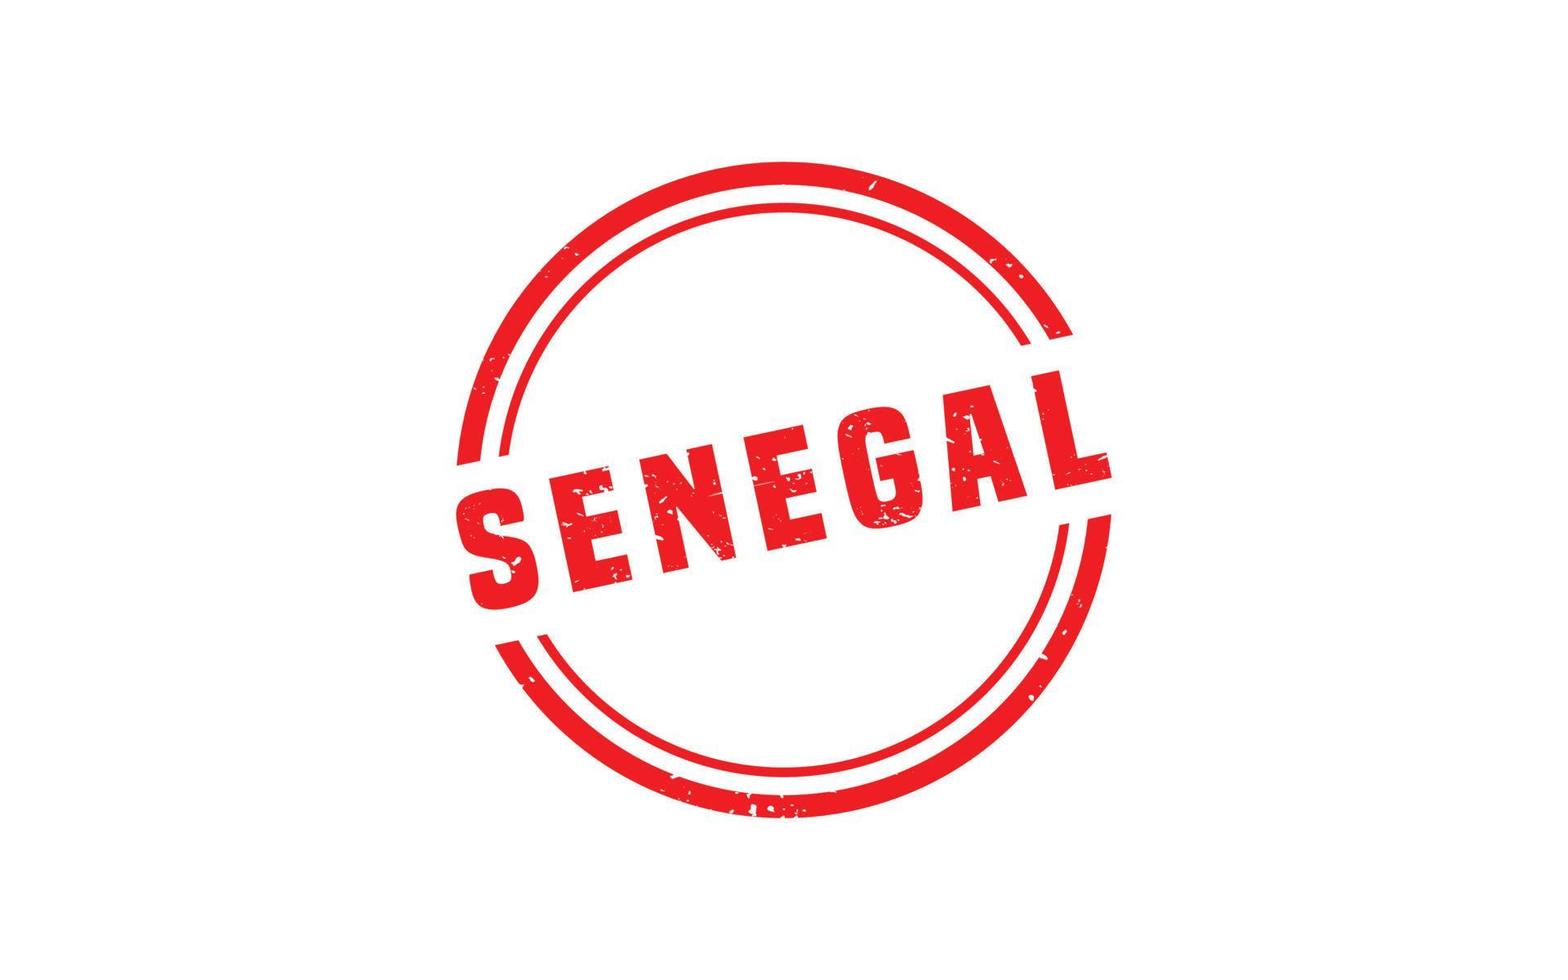 Sénégal timbre caoutchouc avec grunge style sur blanc Contexte vecteur